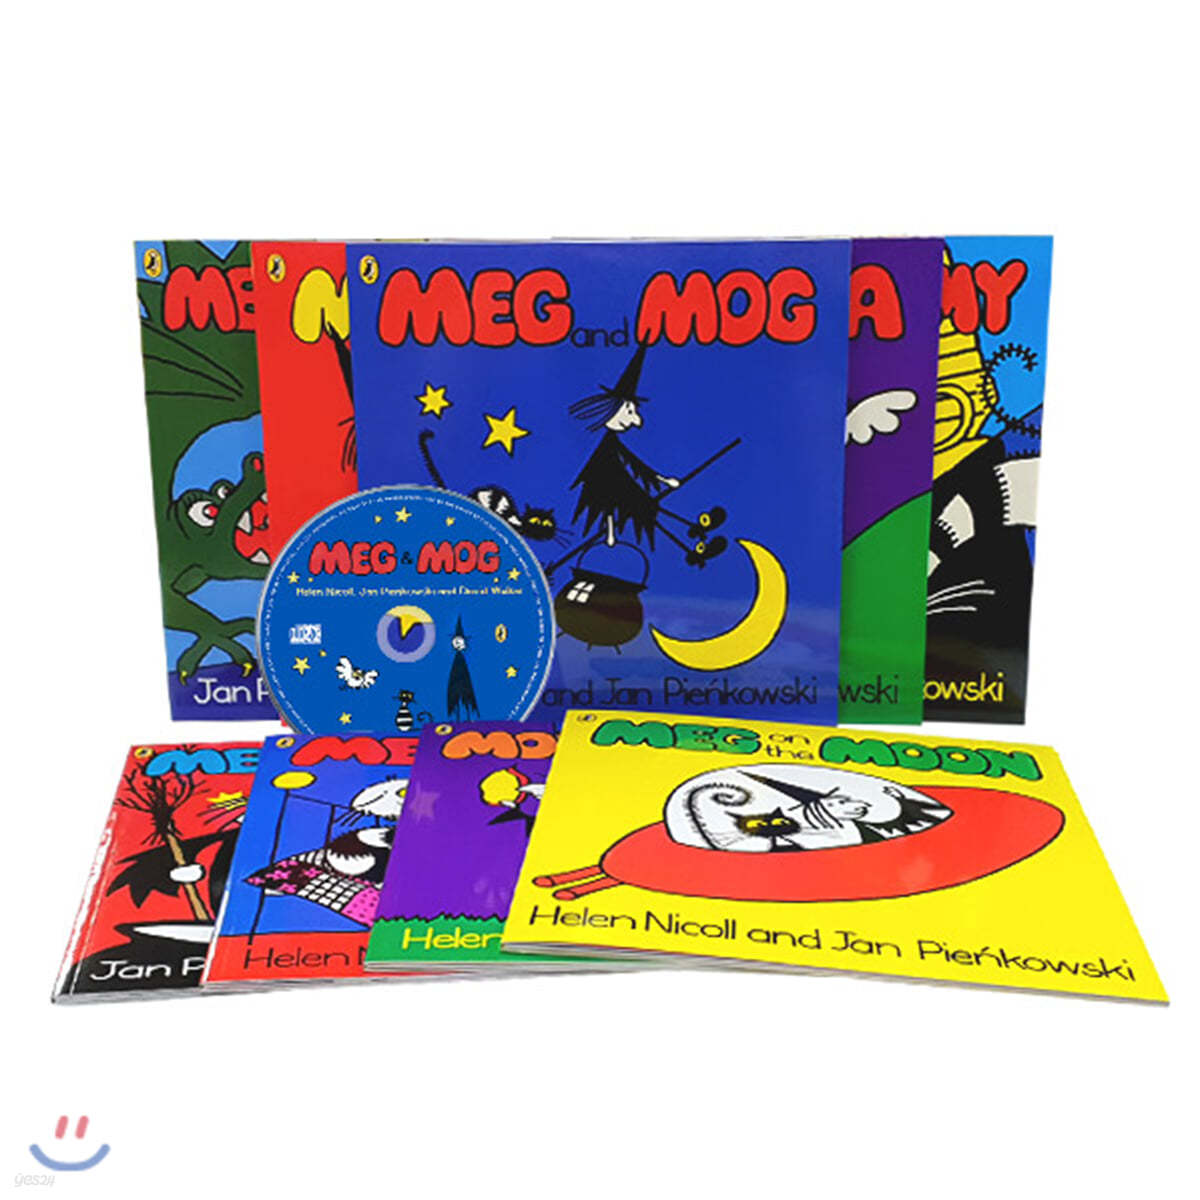 메그와 모그 원서 9종 세트 (CD 포함) Meg and Mog 9 Books with CD Collection